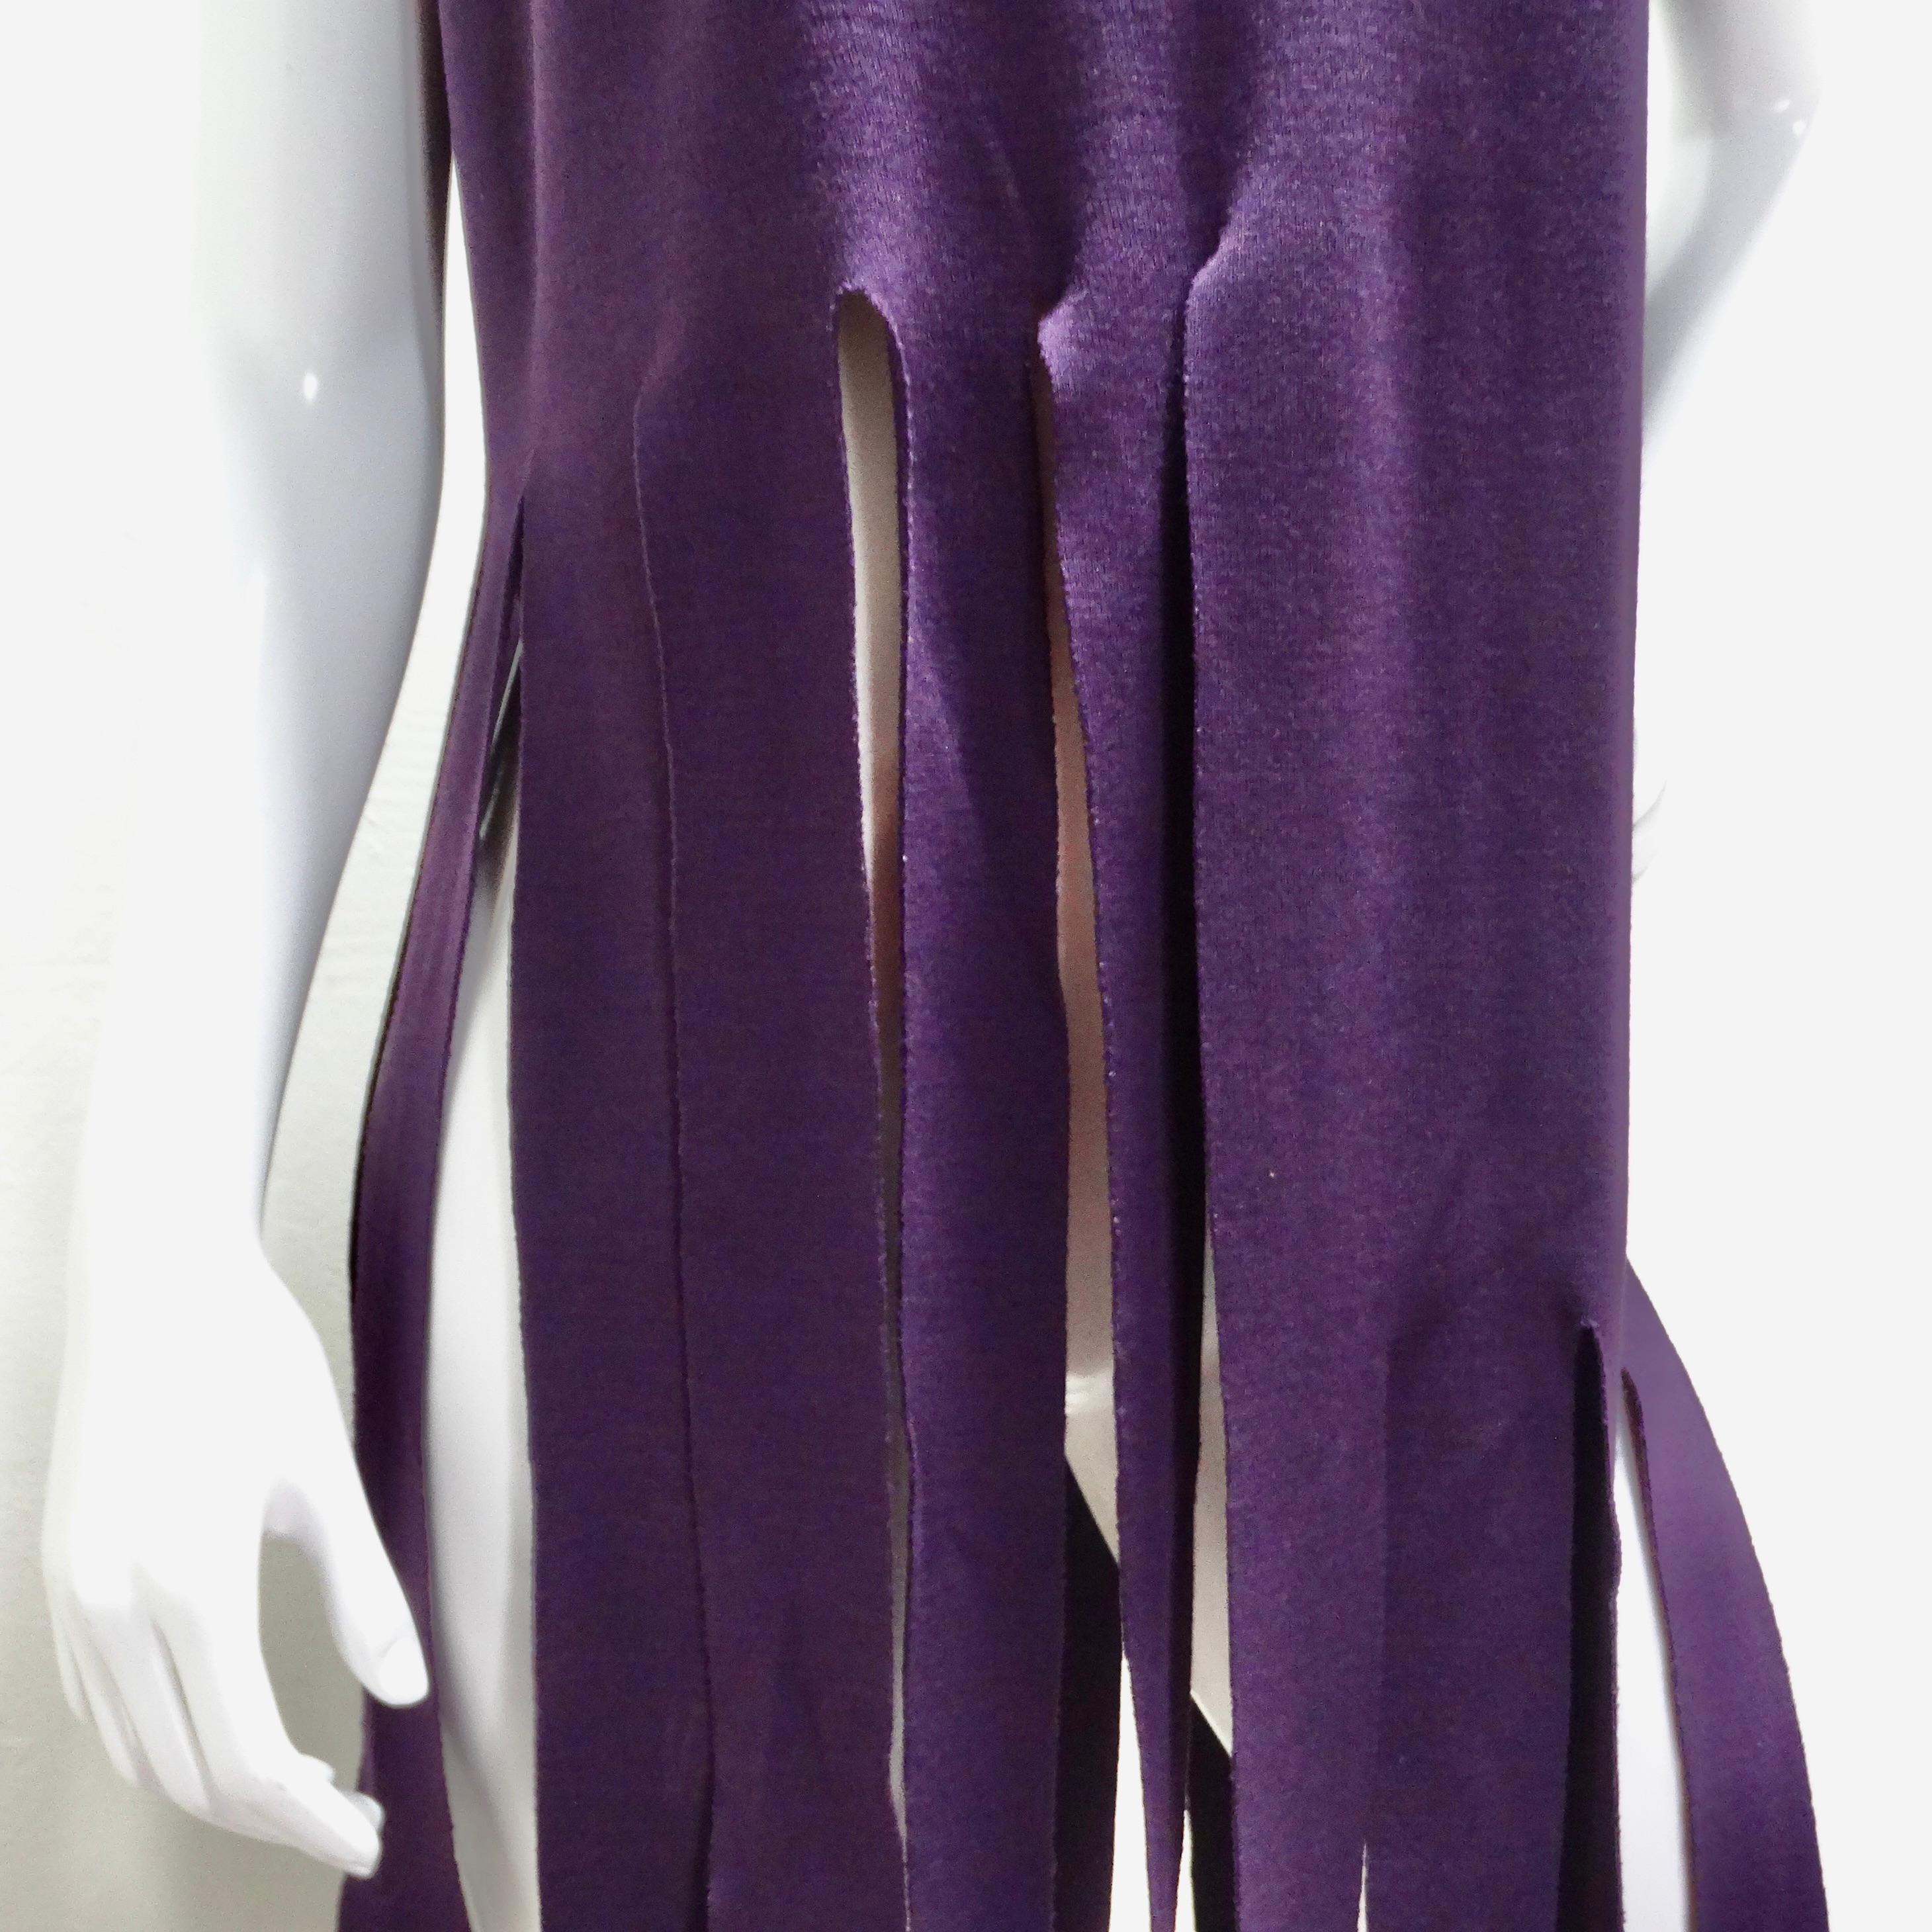 Das Pierre Cardin Reissue Purple Fringe Top ist ein fesselndes und einzigartiges Stück, das moderne Raffinesse und avantgardistischen Stil ausstrahlt. Dieses auffällige Oberteil in dunklem Lila sorgt für einen auffälligen Auftritt.

Im Mittelpunkt